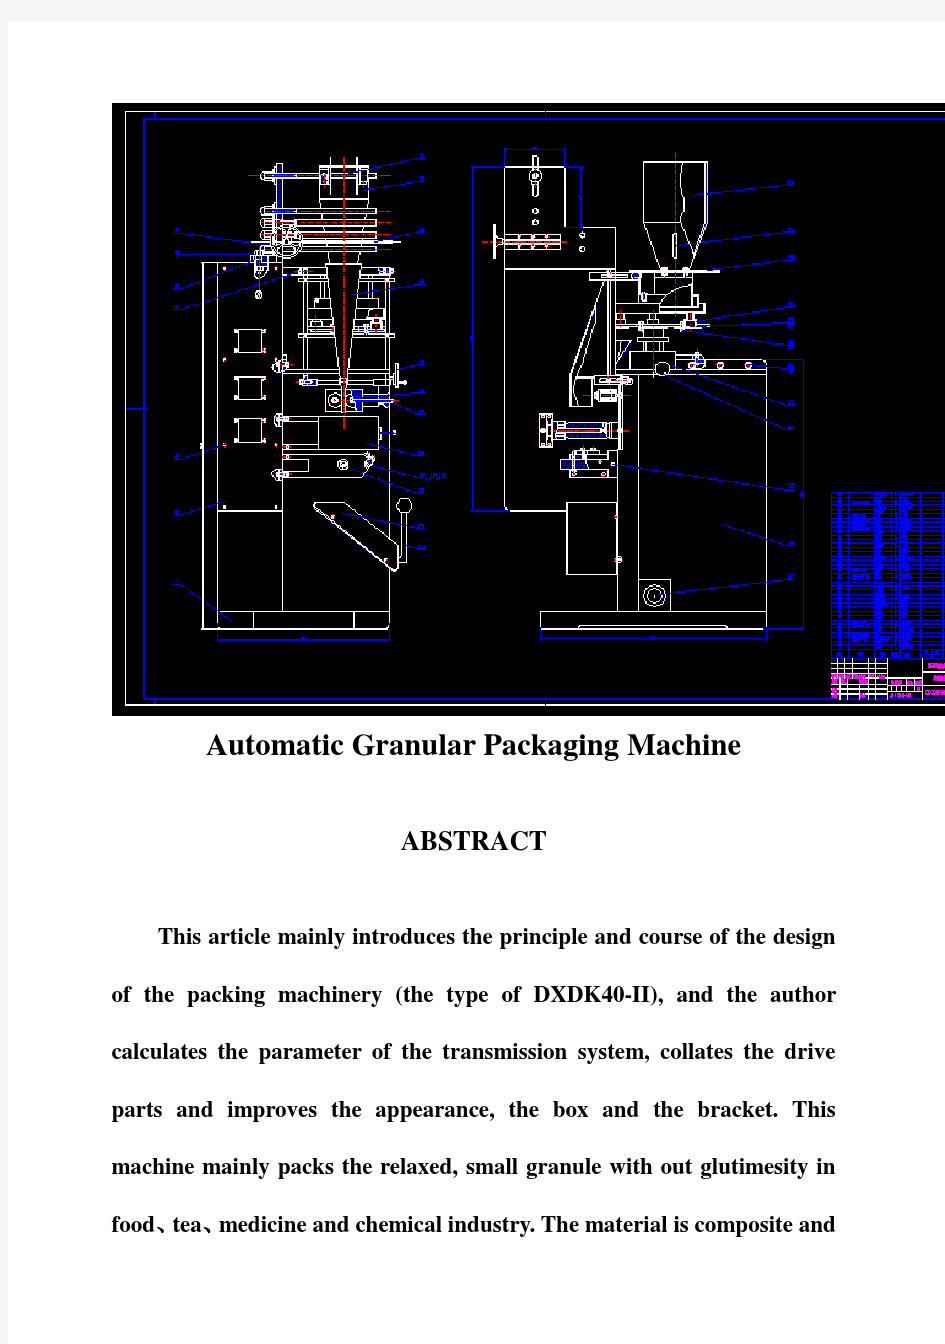 (完整版)全自动颗粒包装机的设计-毕业设计40含CAD图41